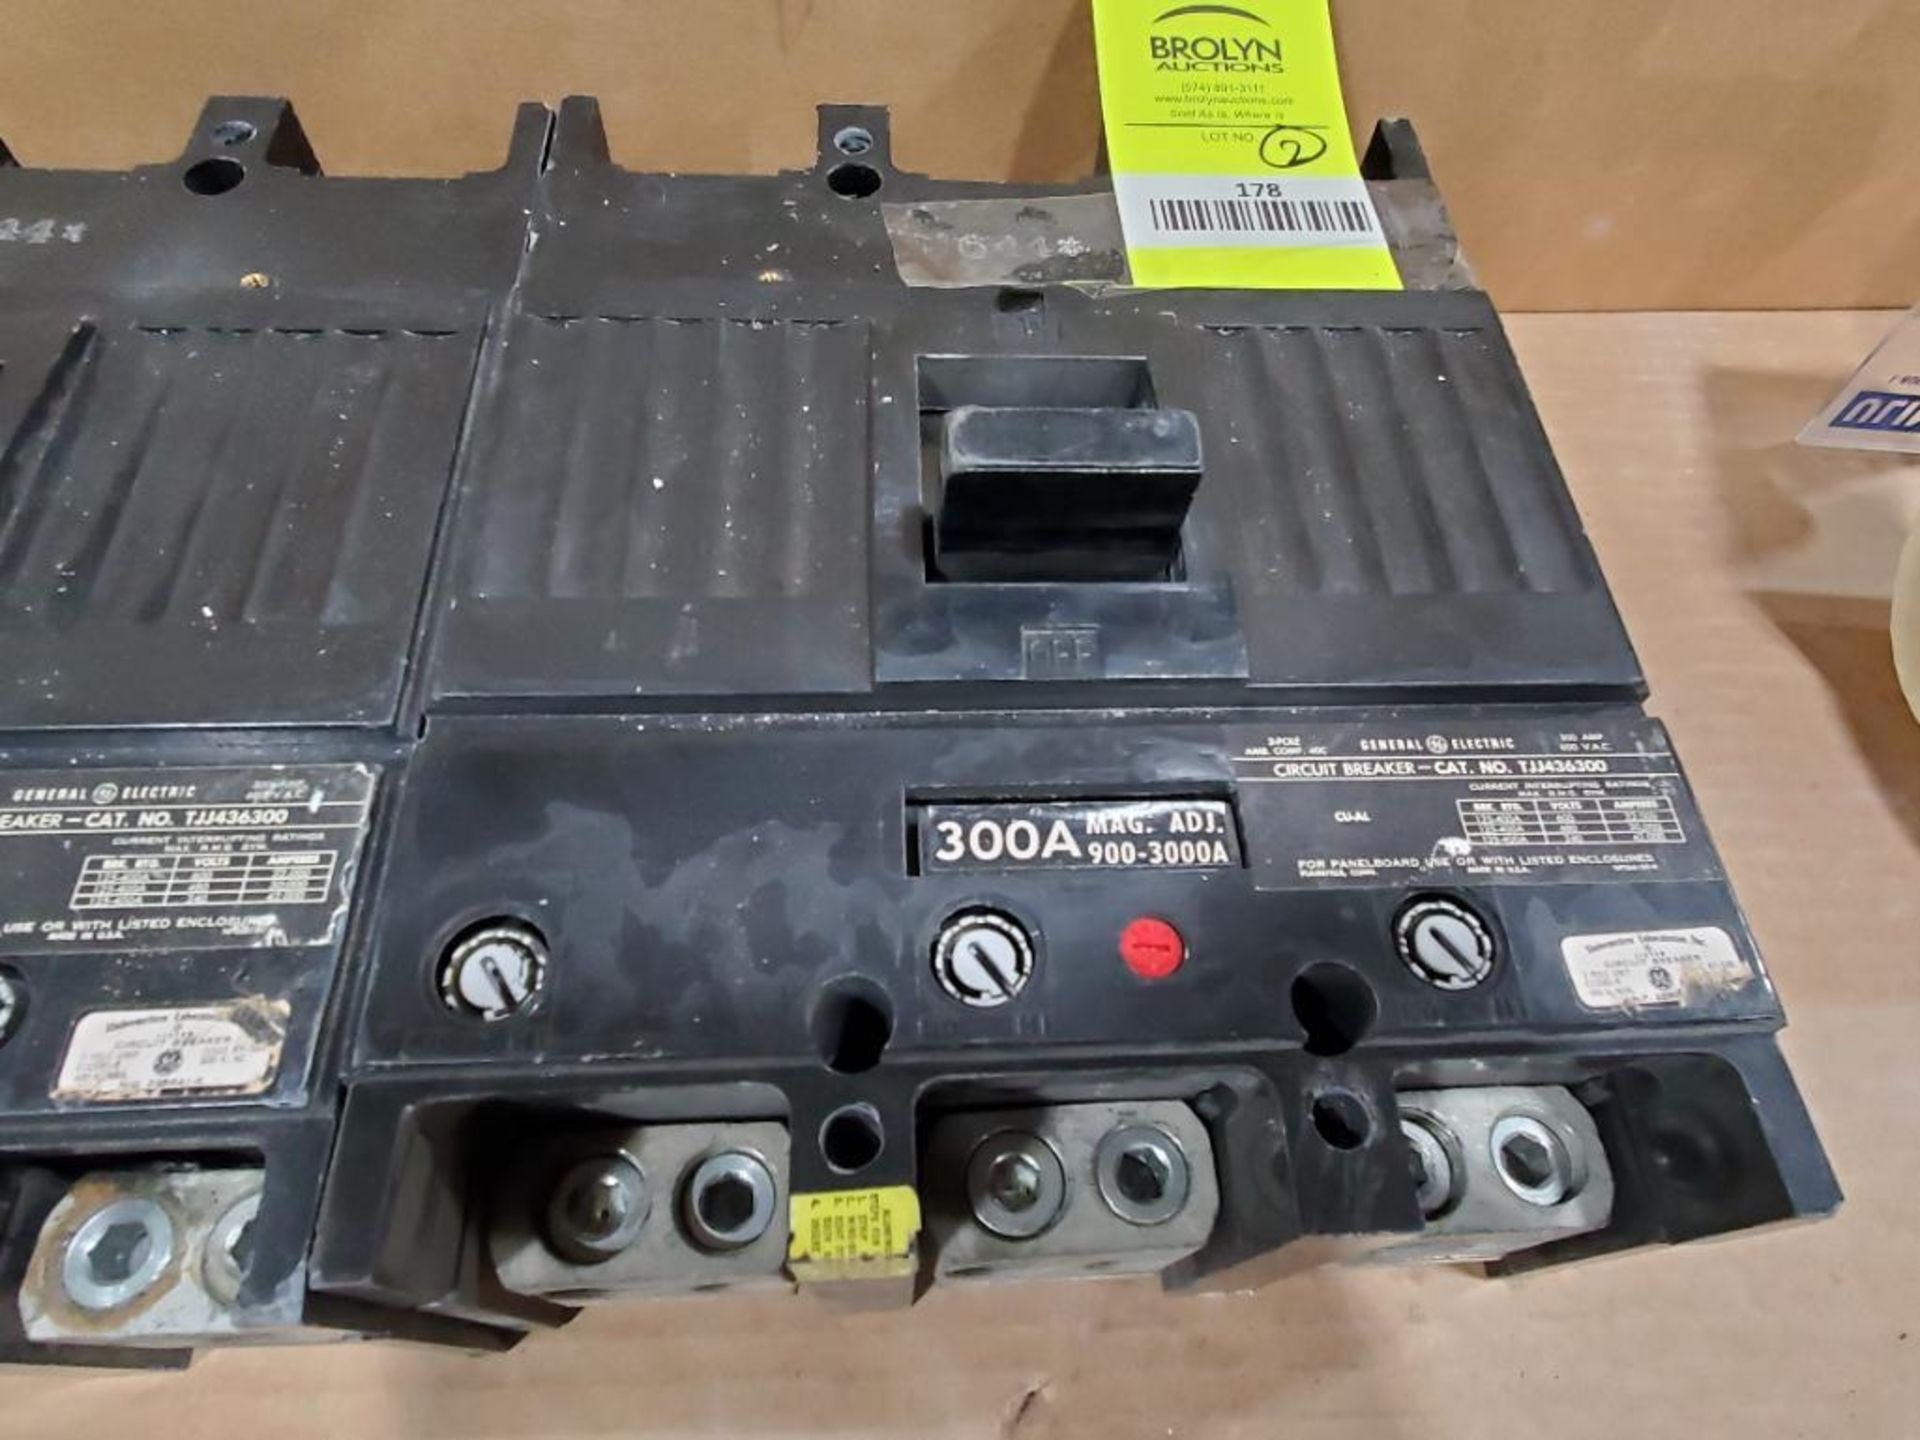 Qty 2 - 300 amp GE molded case breaker. Catalog TJJ436300. - Image 4 of 6